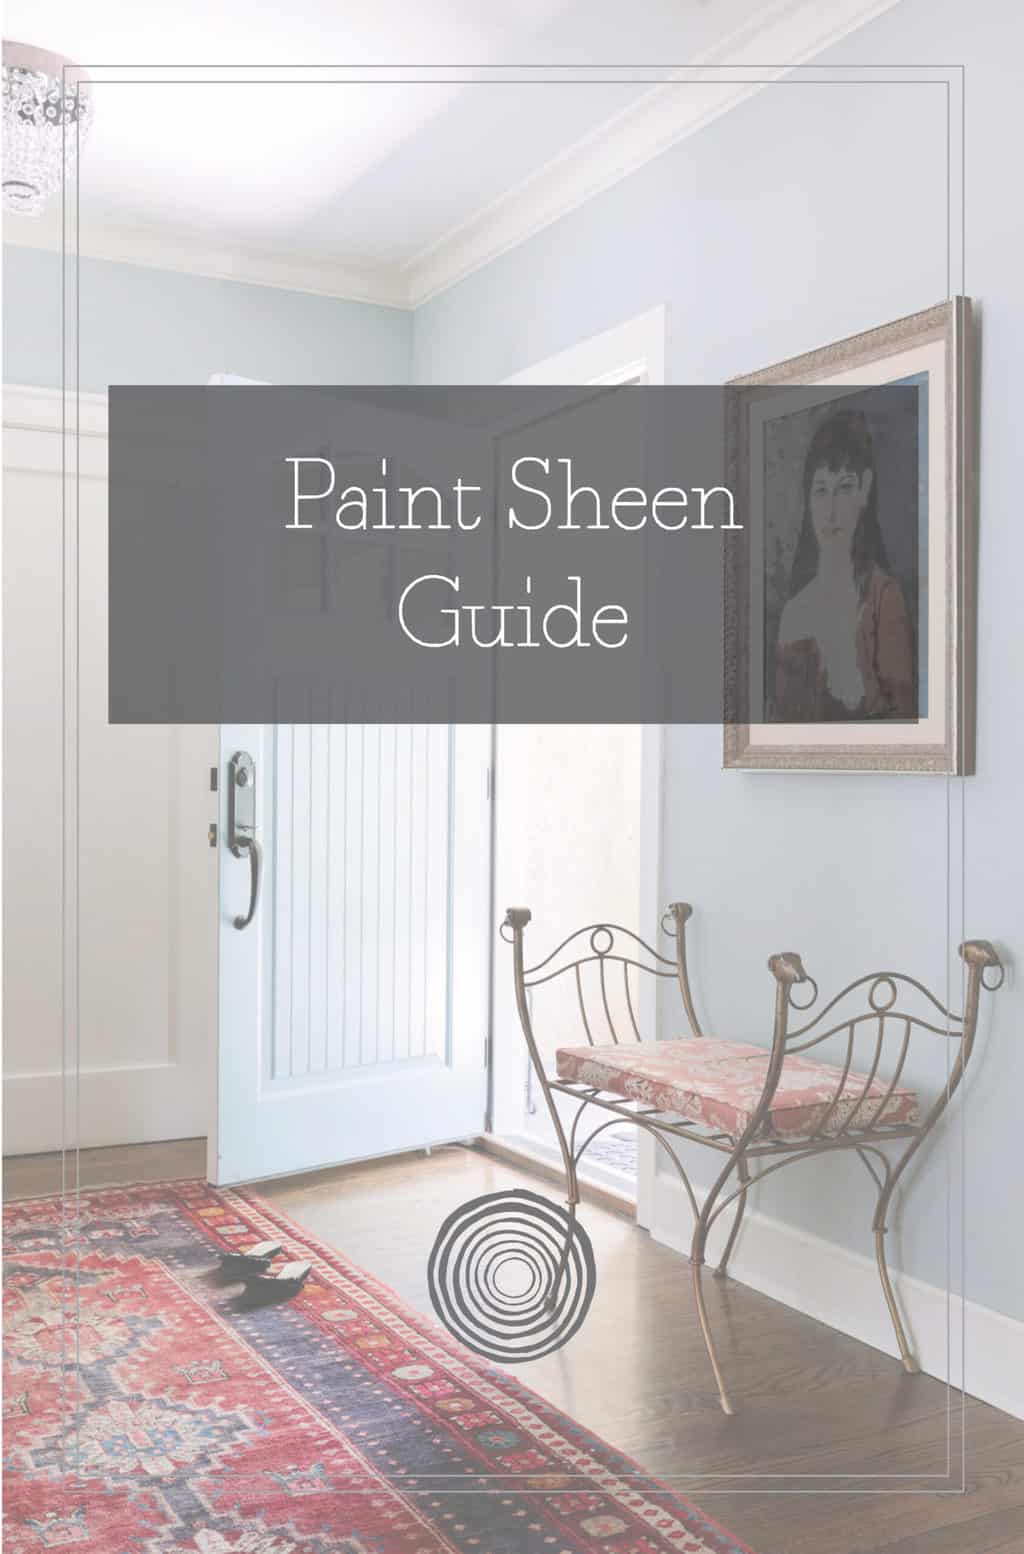 Paint Sheen Guide PDF